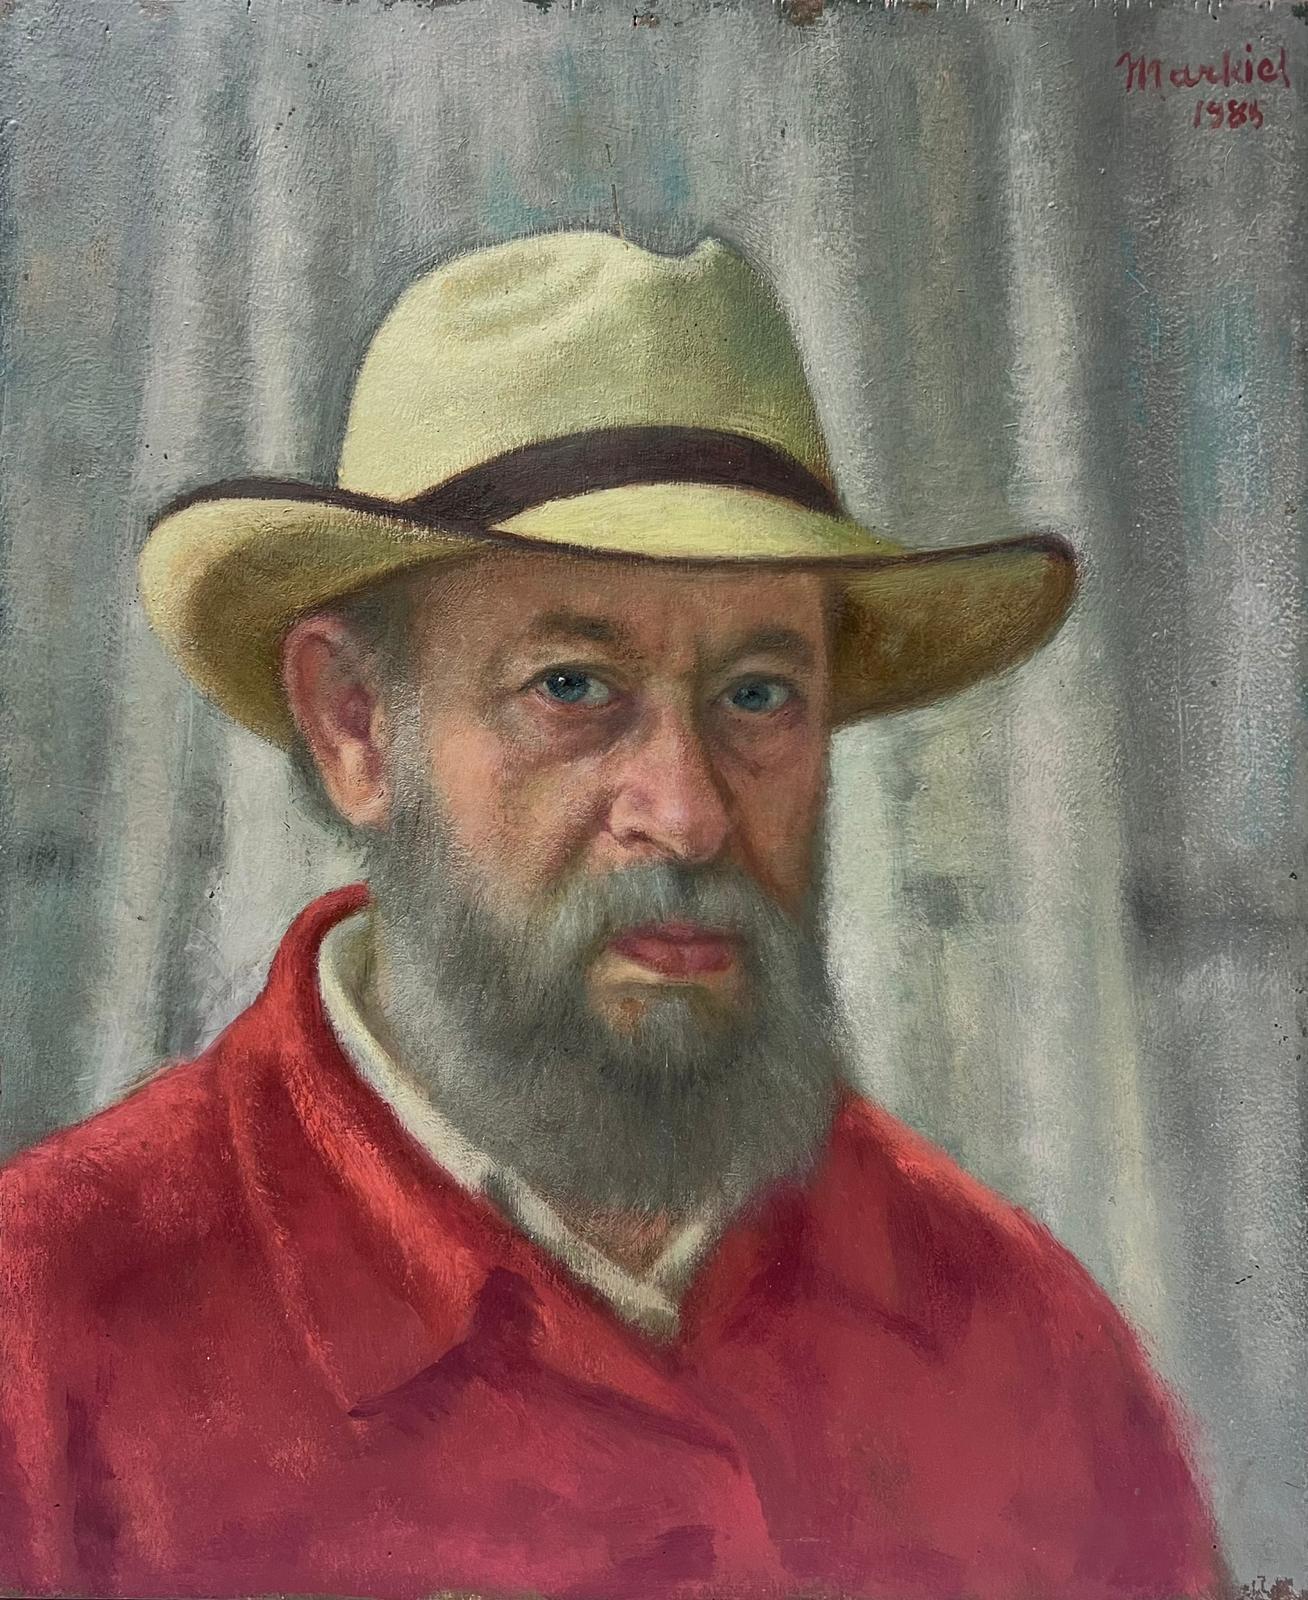 Jacob Markiel Portrait Painting - Self Portrait of the Artist Man in Hat Exhibited Paris Salon 1985, large oil 